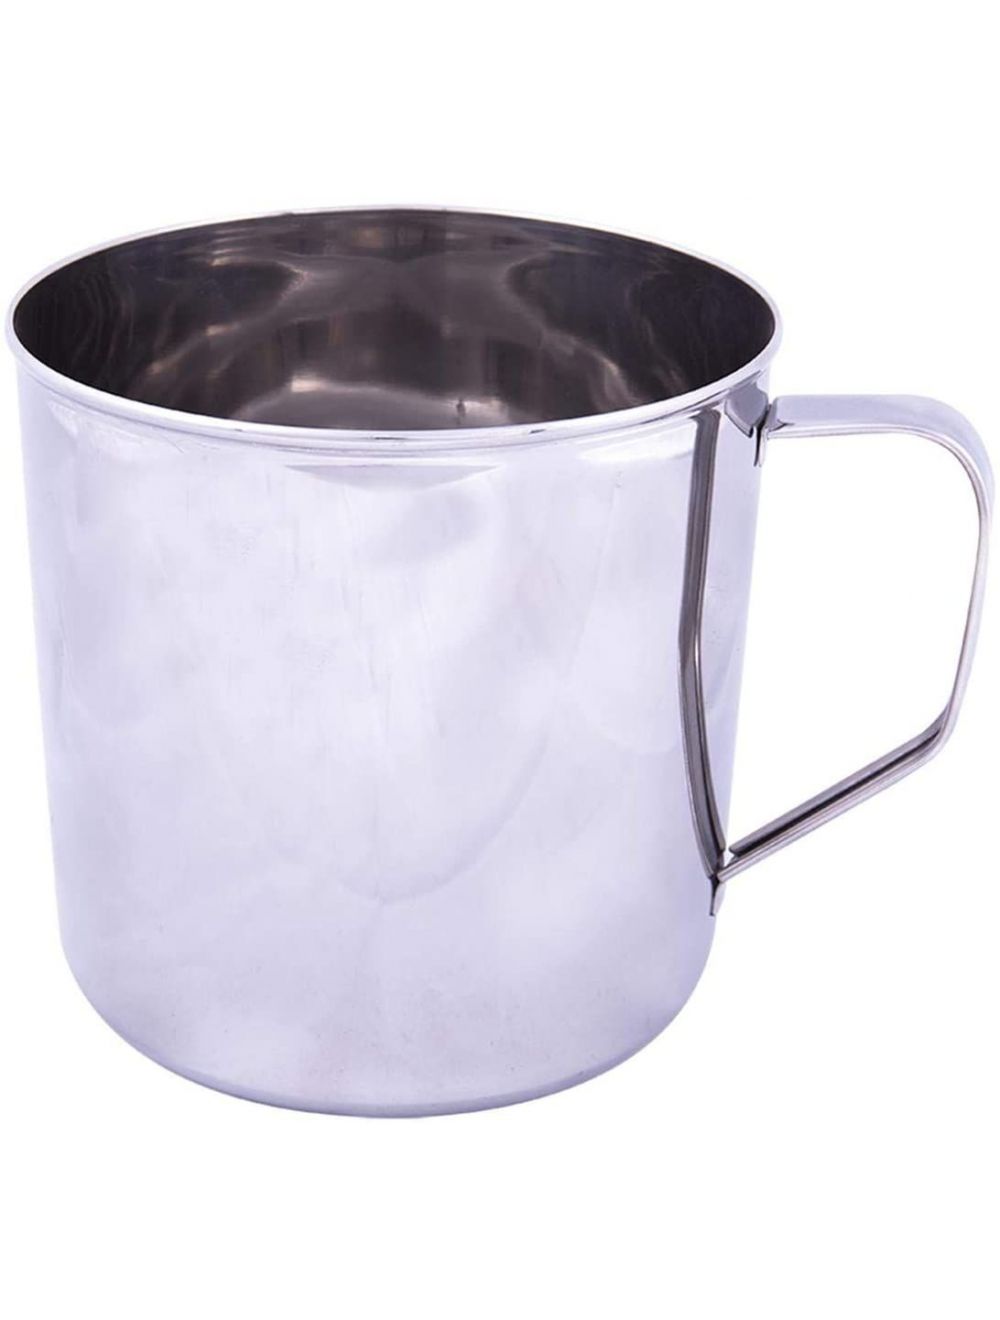 Raj 13.5 cm Stainless Steel Mug, Silver-NM0013